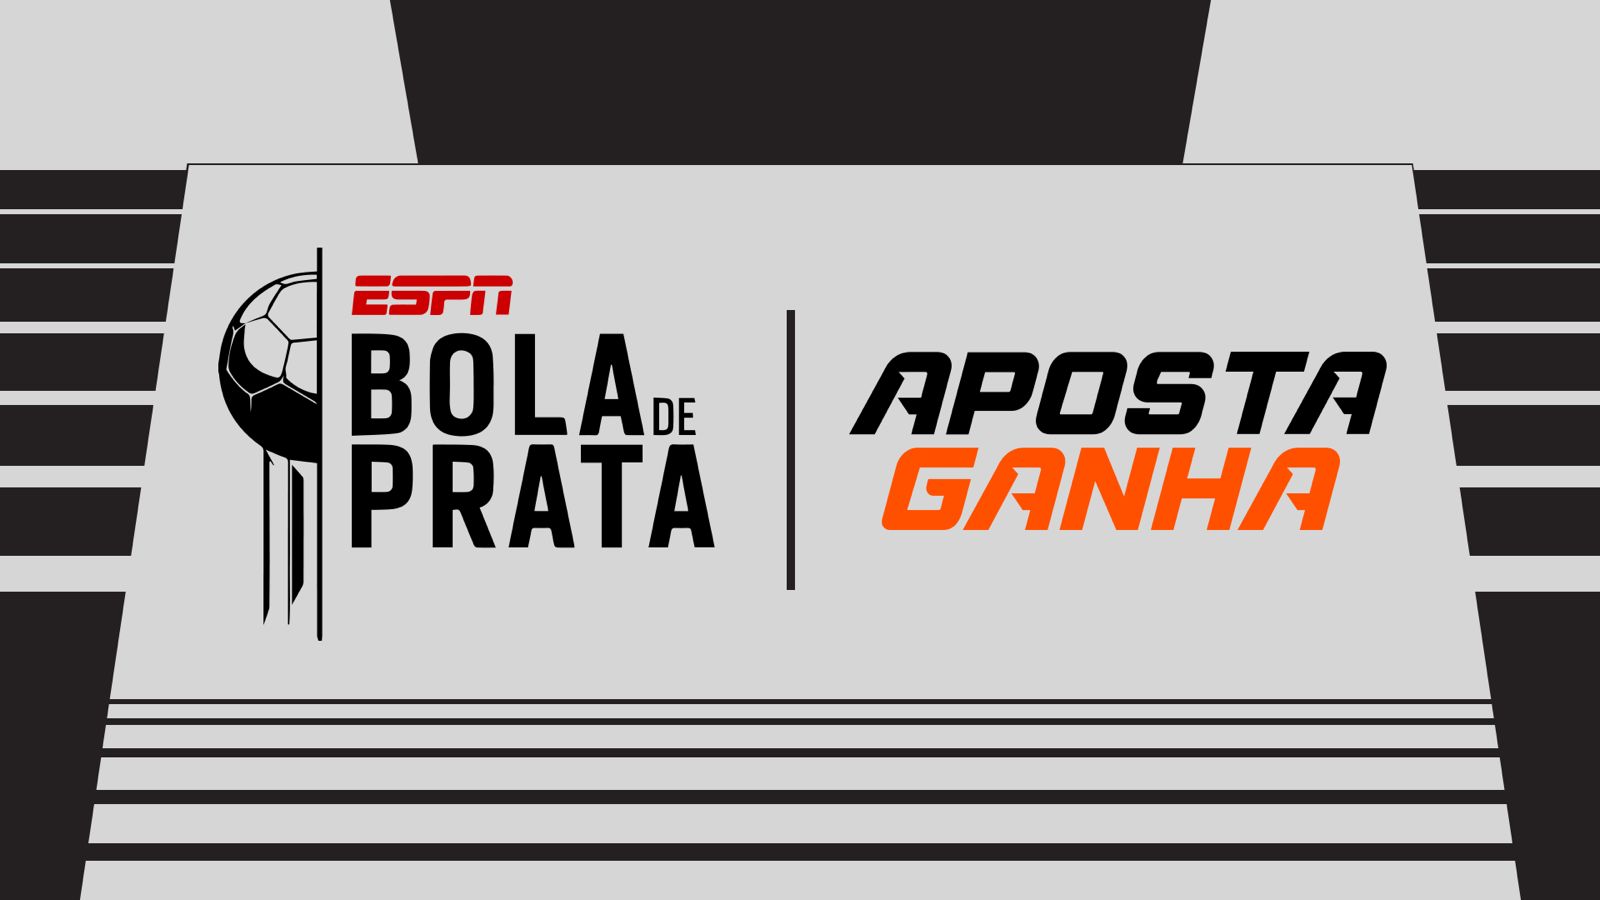 Aposta Ganha patrocina el mayor evento anual del Fútbol Brasileño